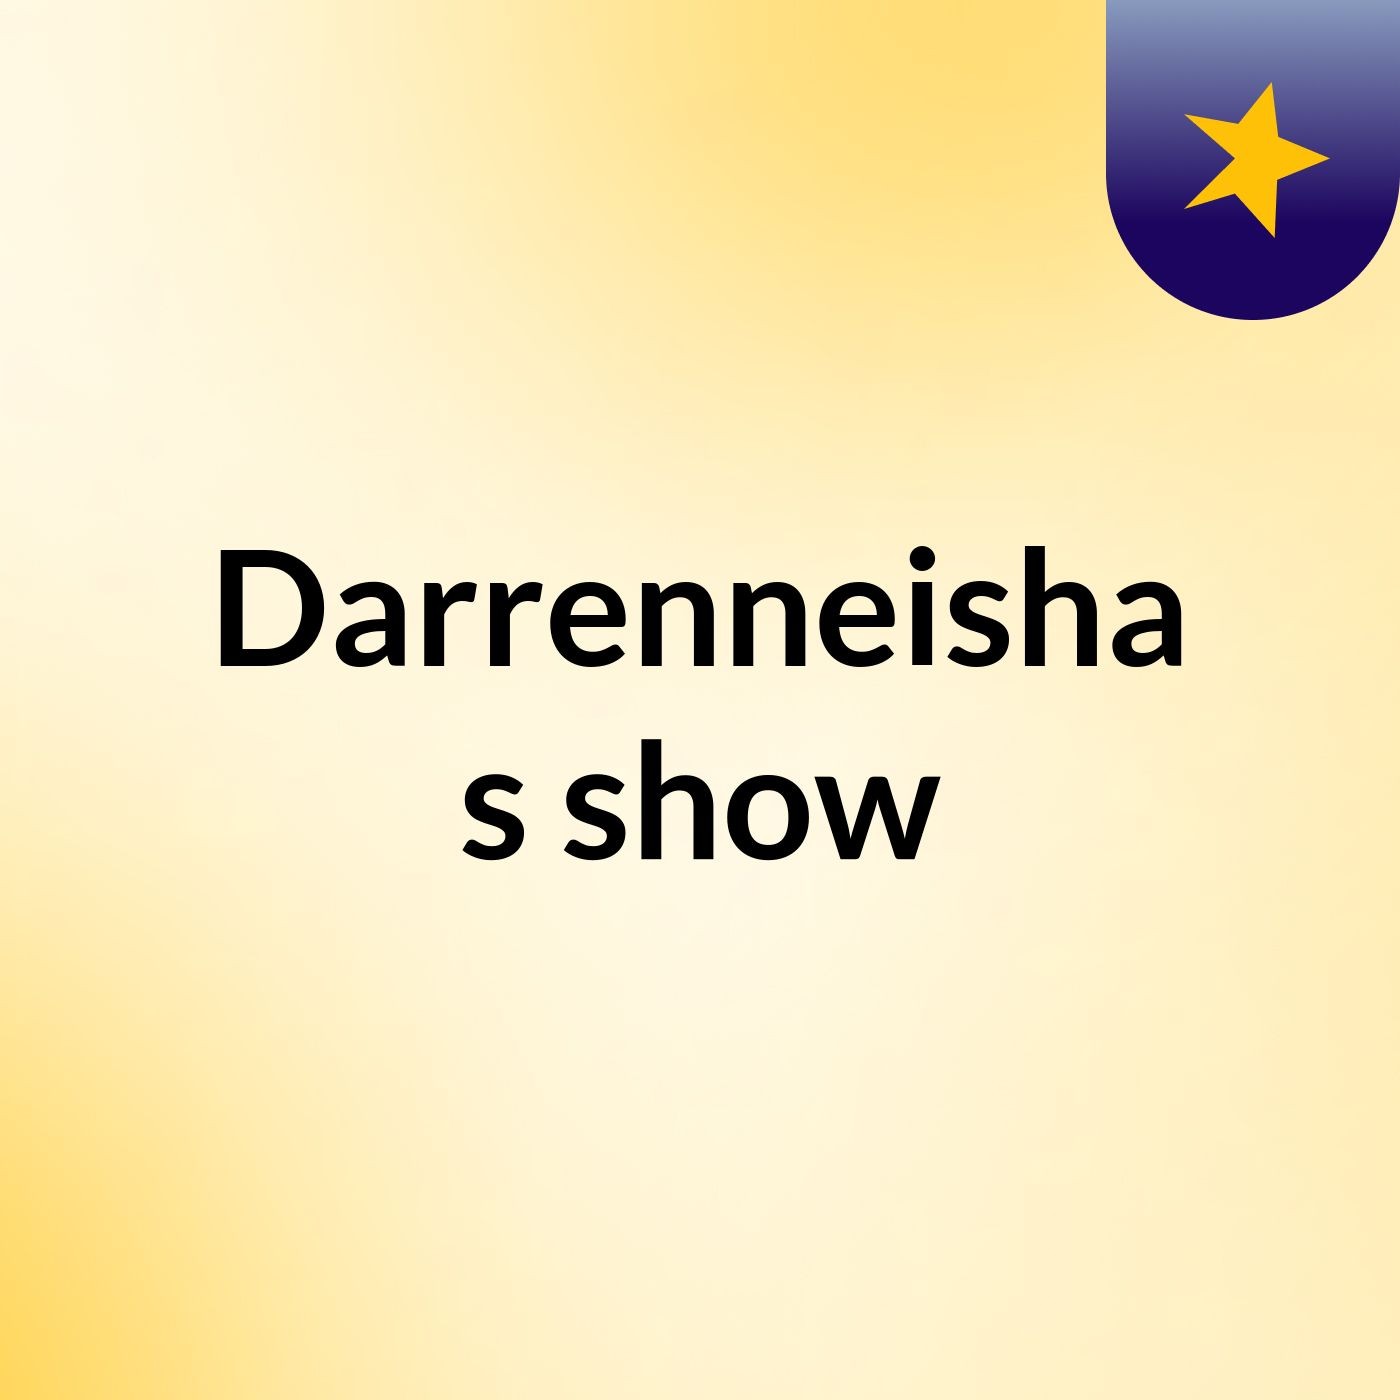 Episode 6 - Darrenneisha's show